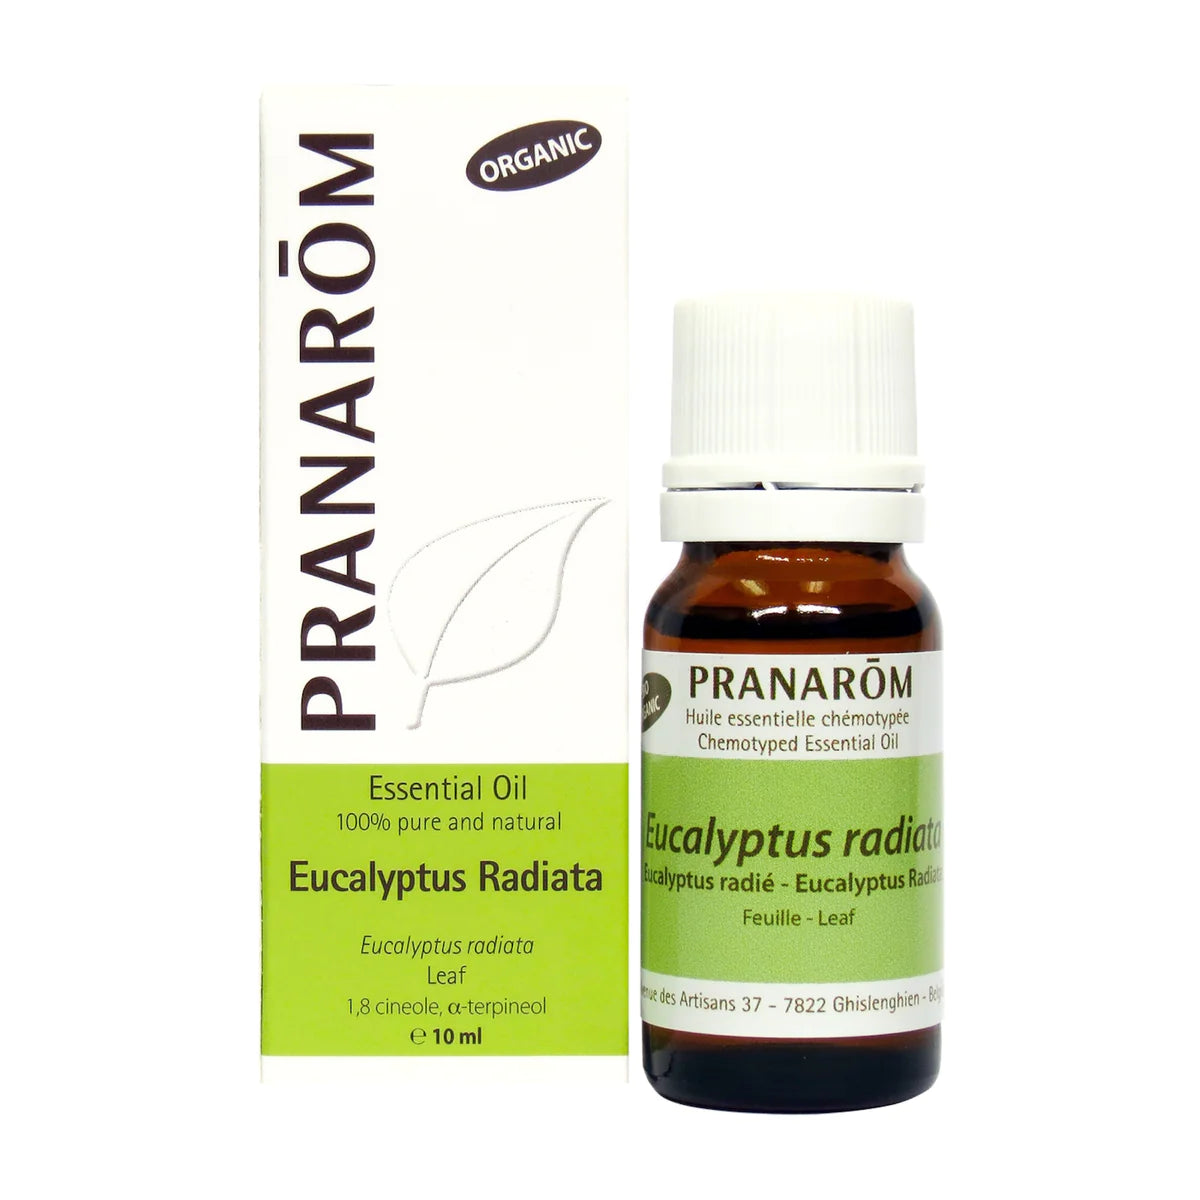 Eucalyptus Radiata, essential oil, Organic